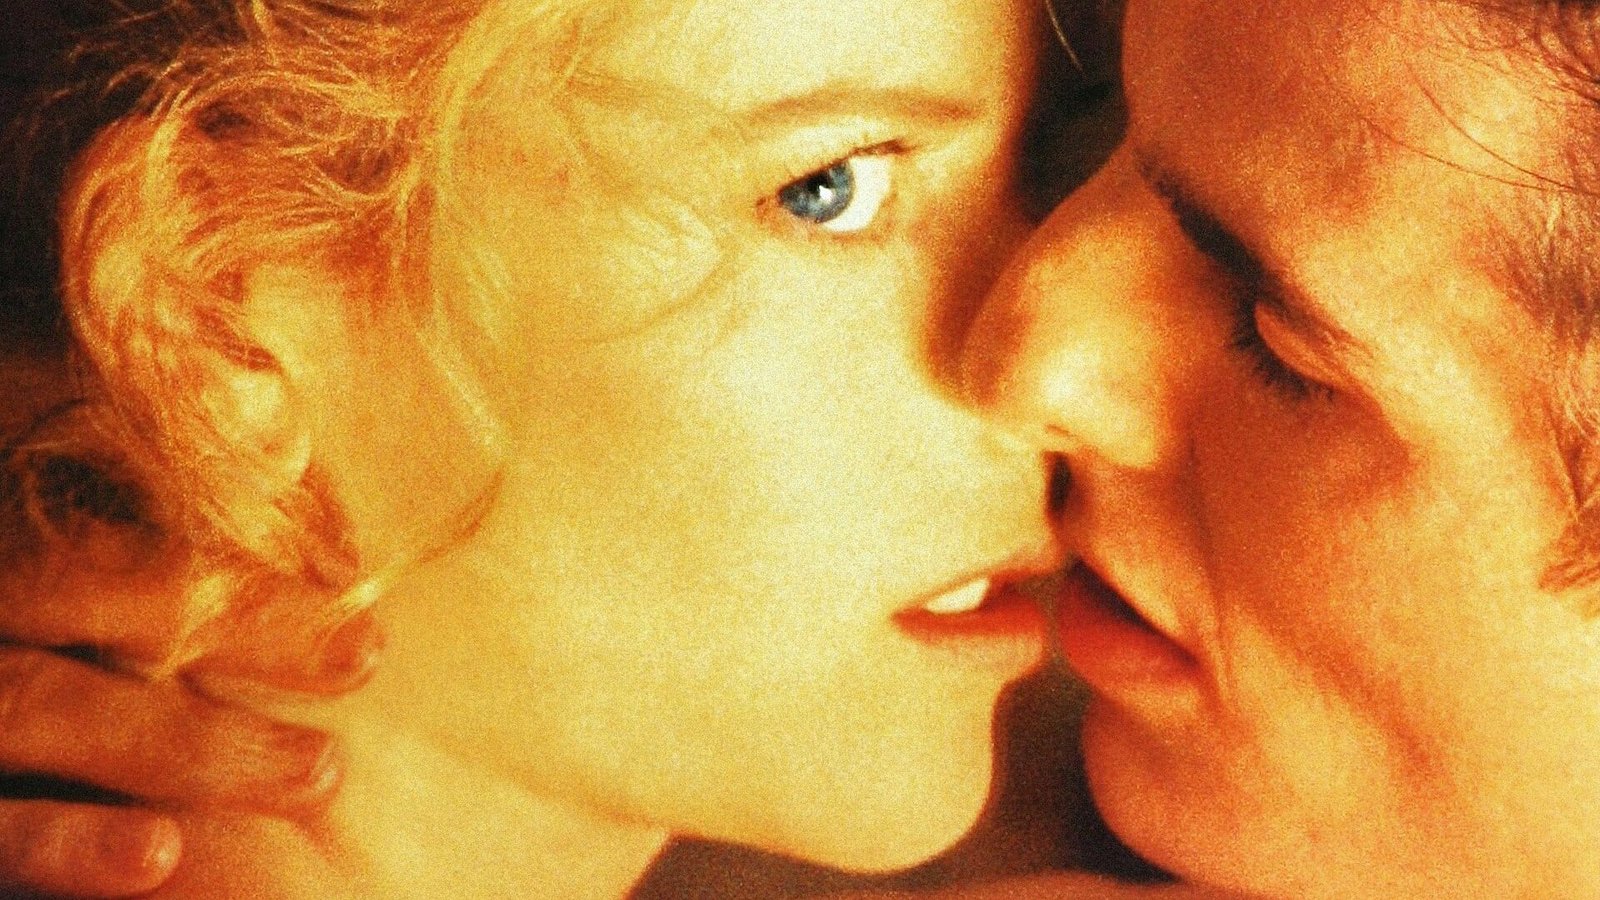 Eyes wide shut ( 1999 )